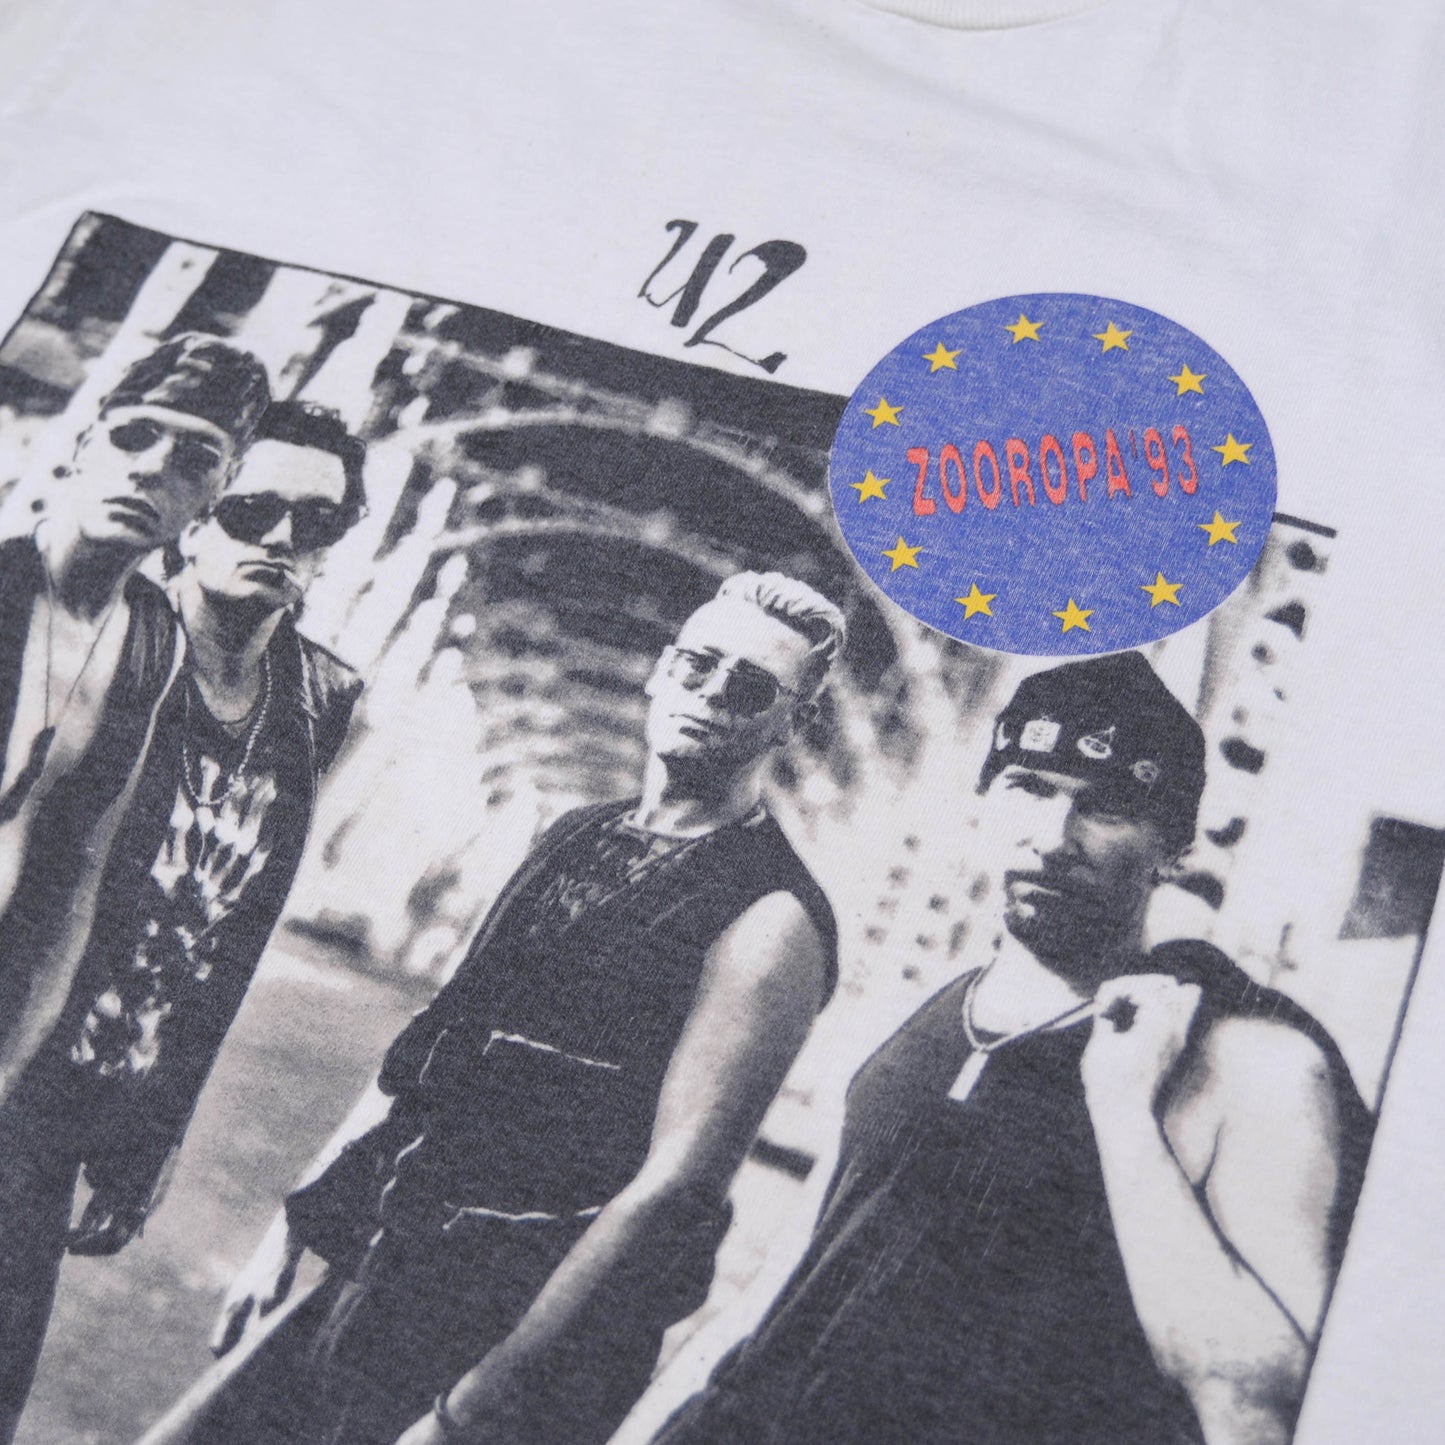 90's U2"ZOOROPA"ツアーTシャツ(L)/A3496T-S